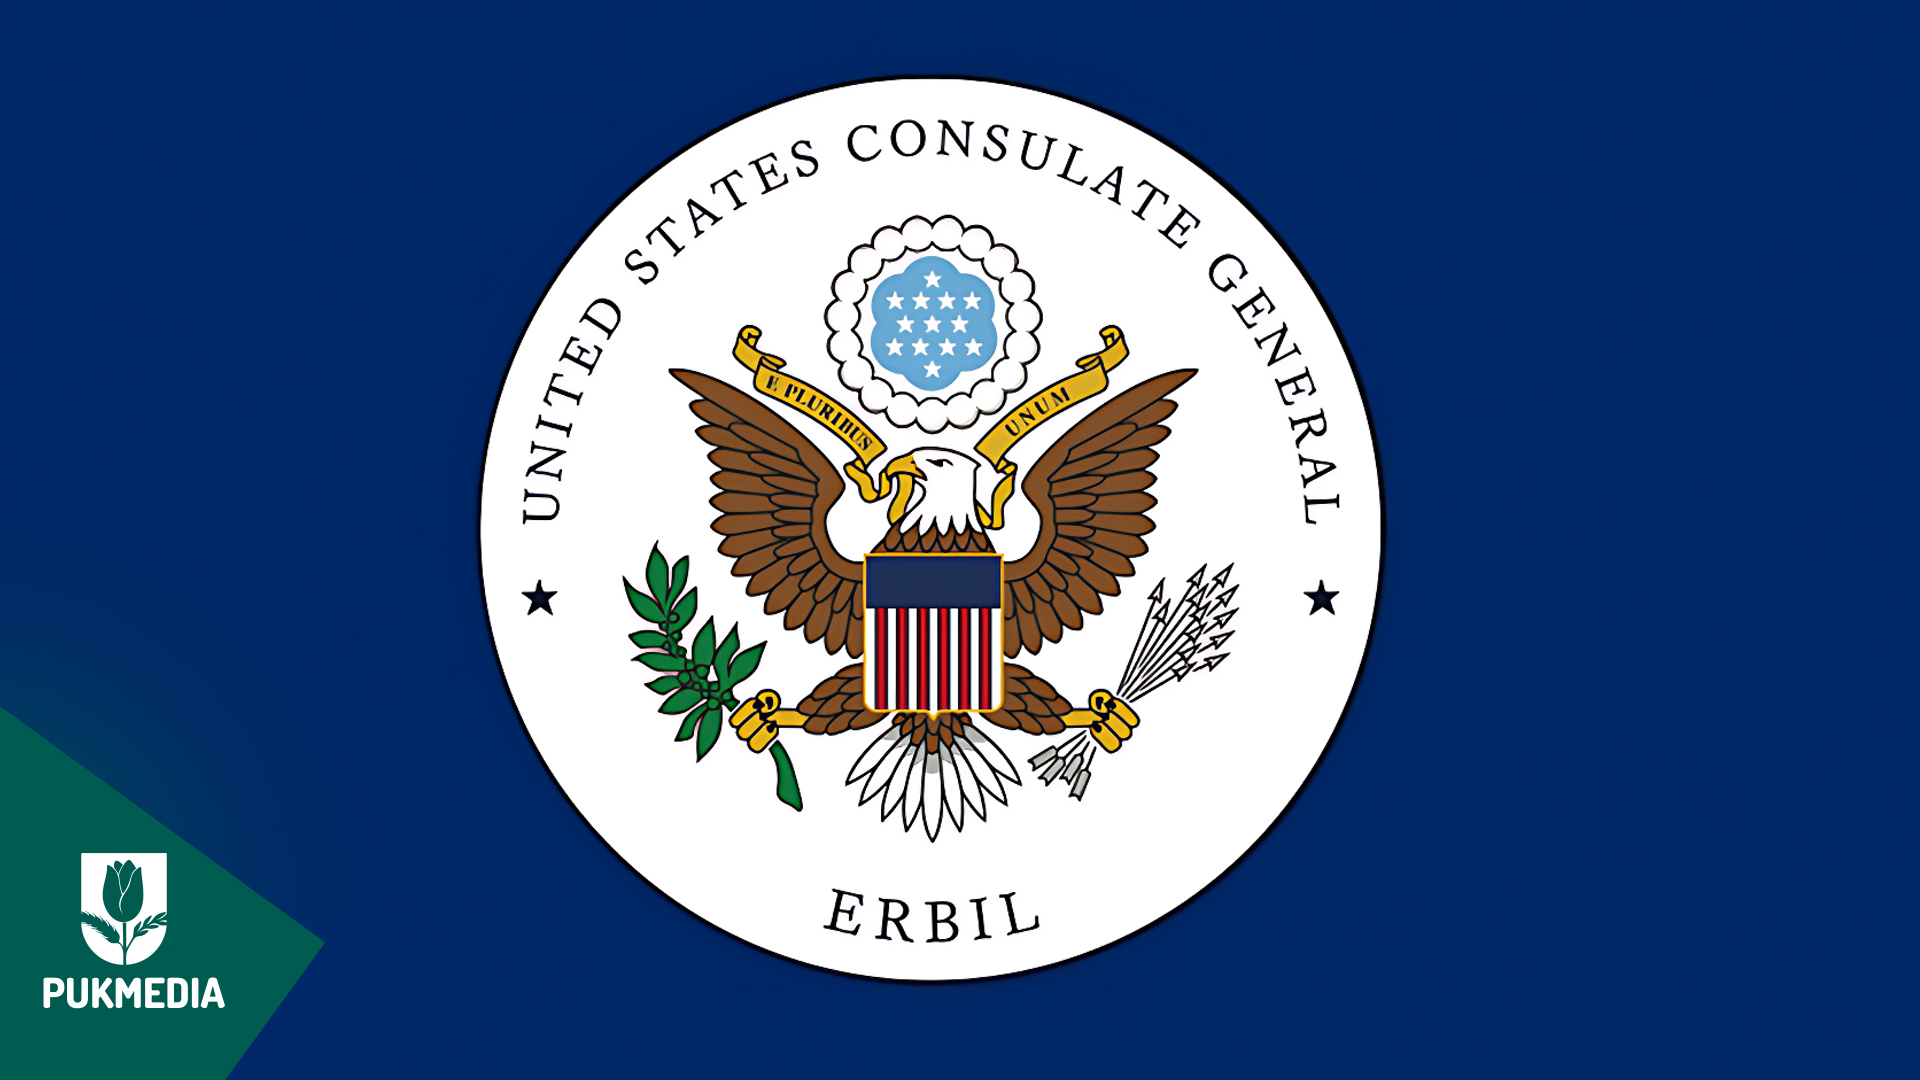 The logo of U.S. Consulate General in Erbil